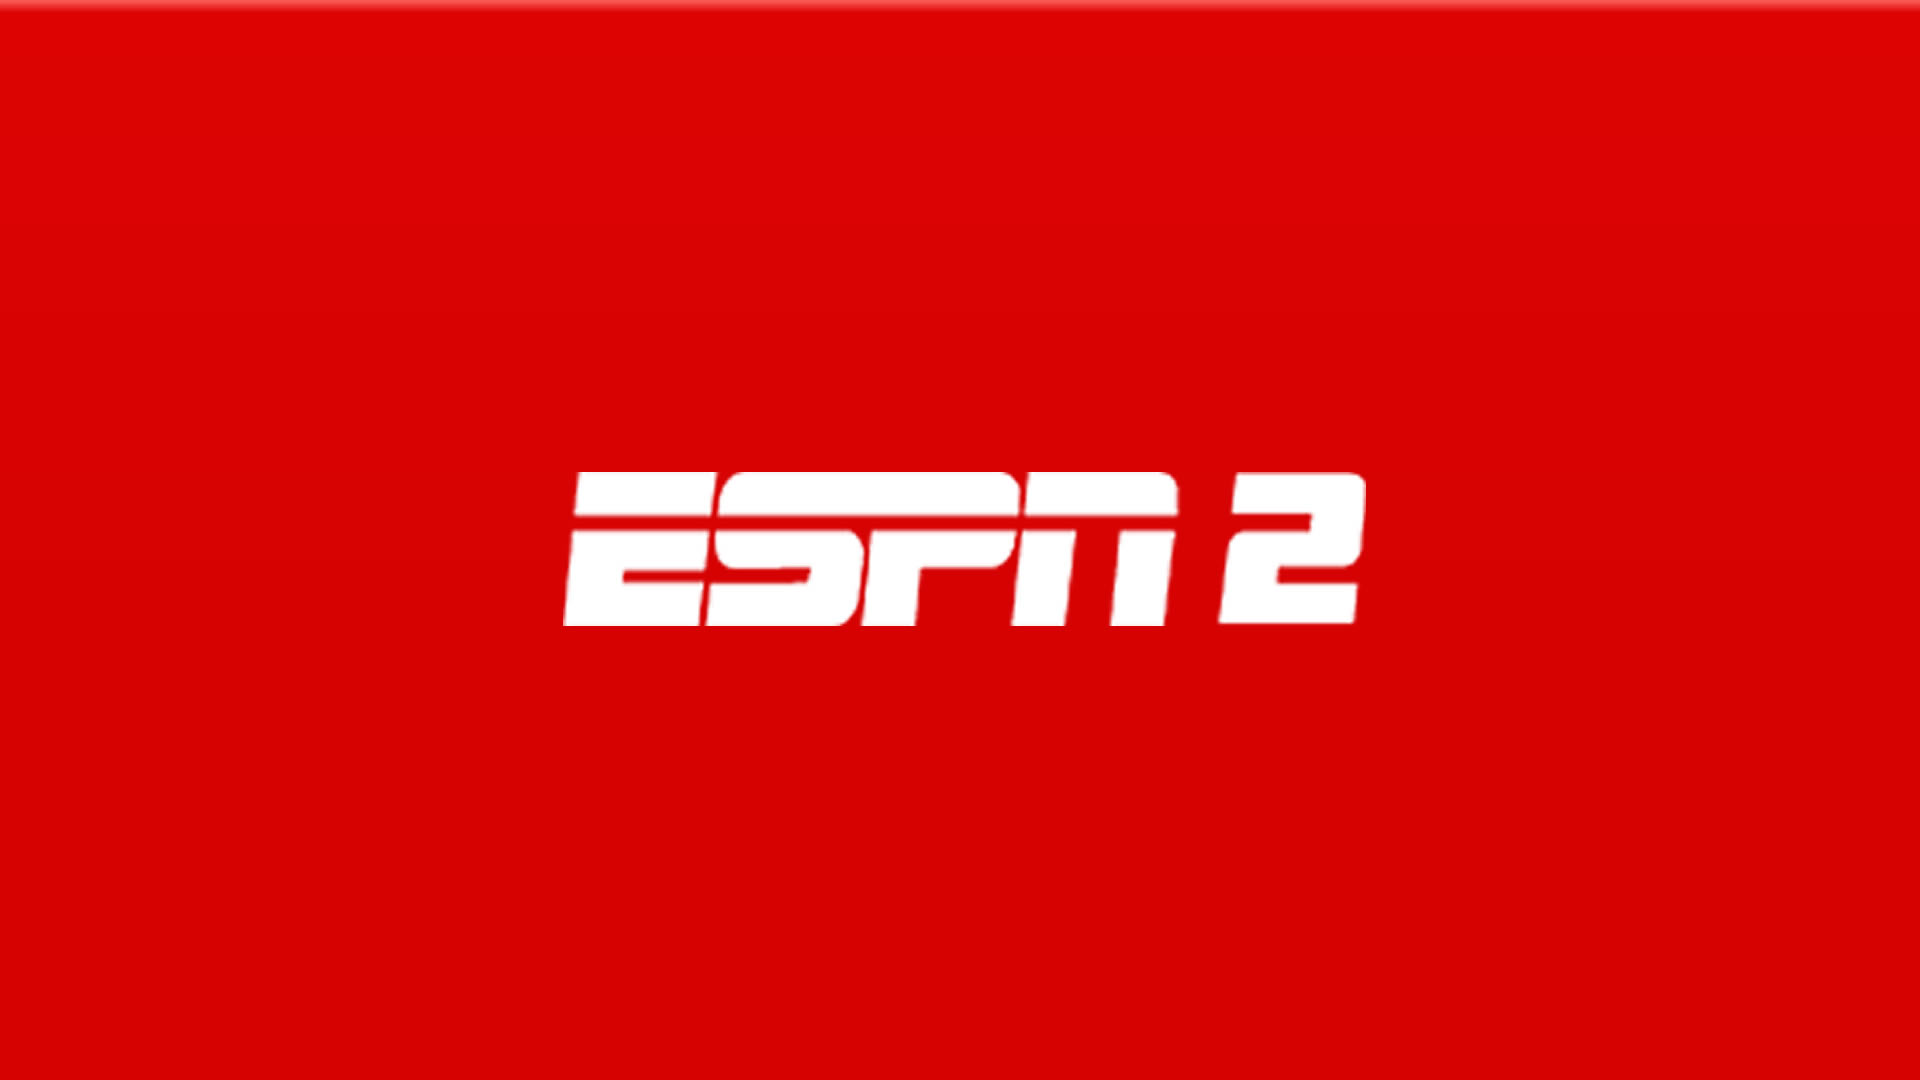 DStv - Assista aos jogos da NBA em directo na ESPN 2 🏀👉🏾👉🏾